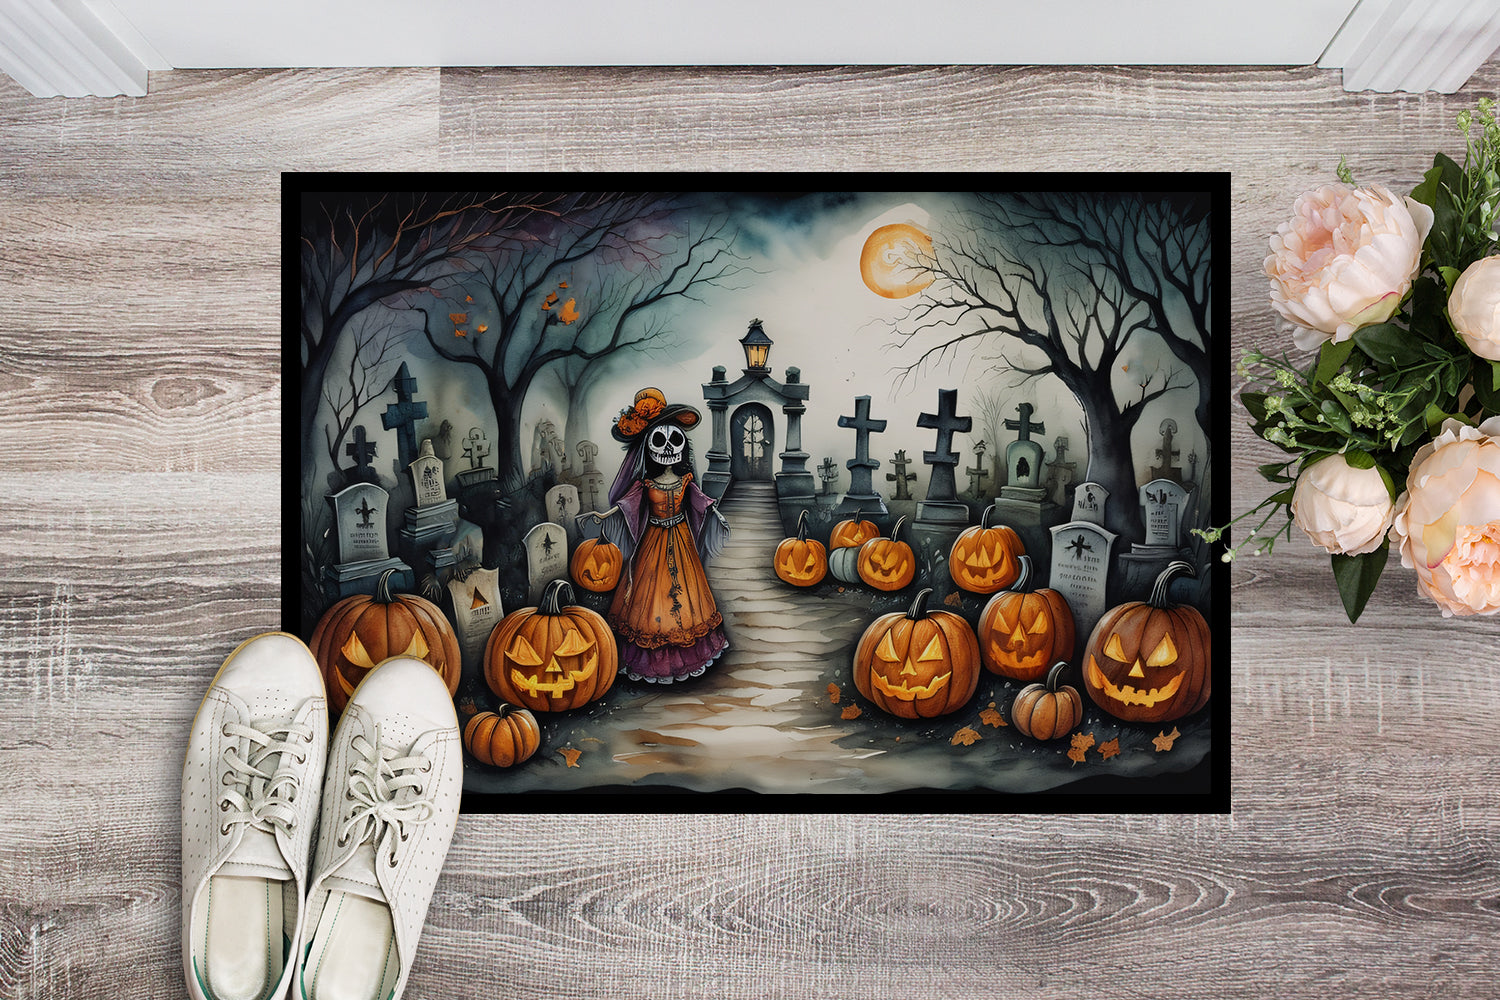 Buy this La Catrina Skeleton Spooky Halloween Doormat 18x27